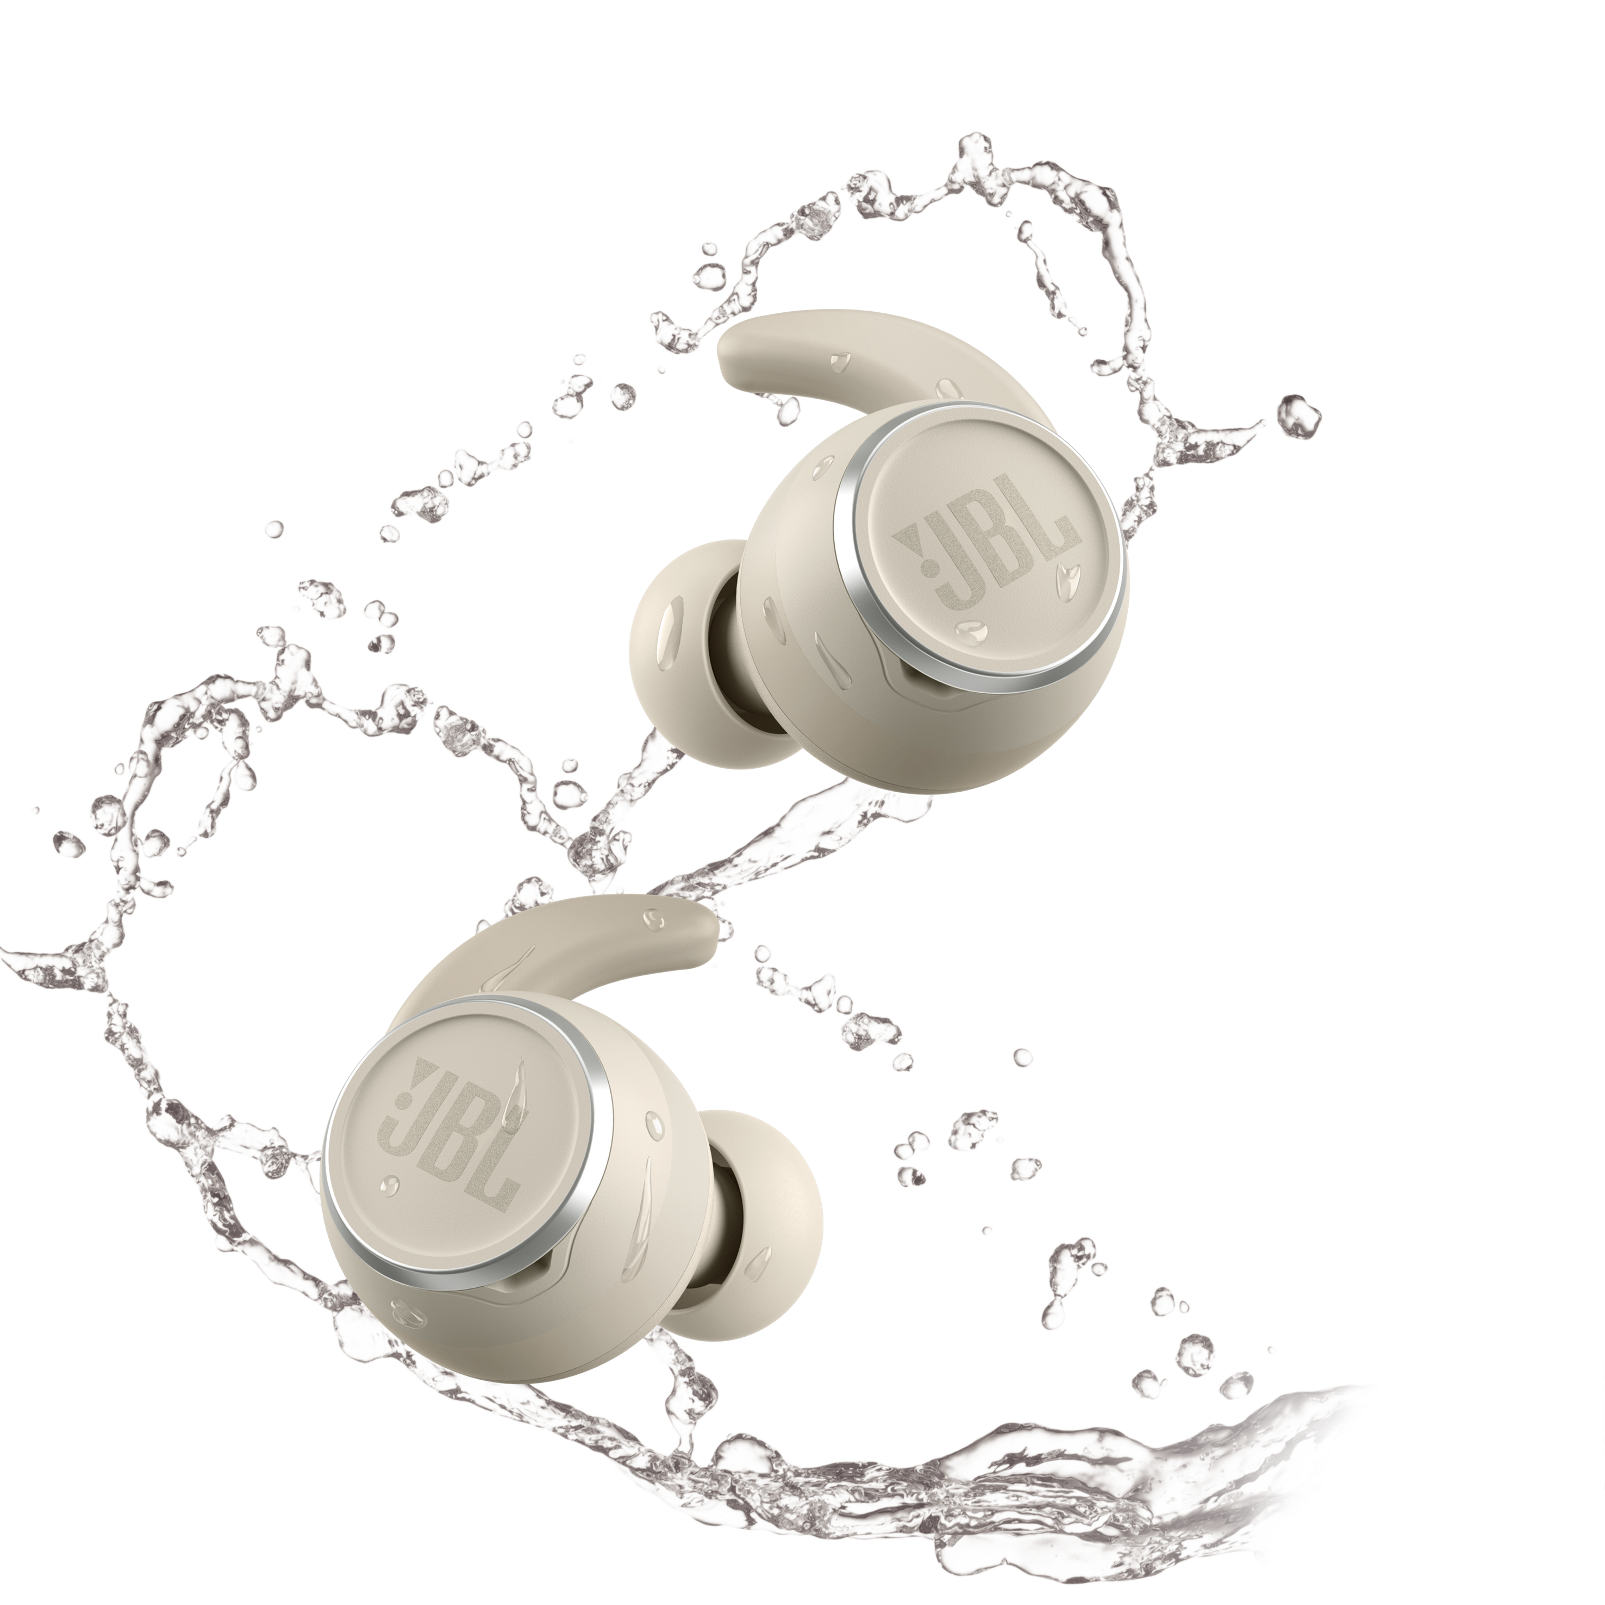 JBL Reflect Mini NC - White - Waterproof true wireless Noise Cancelling sport earbuds - Front